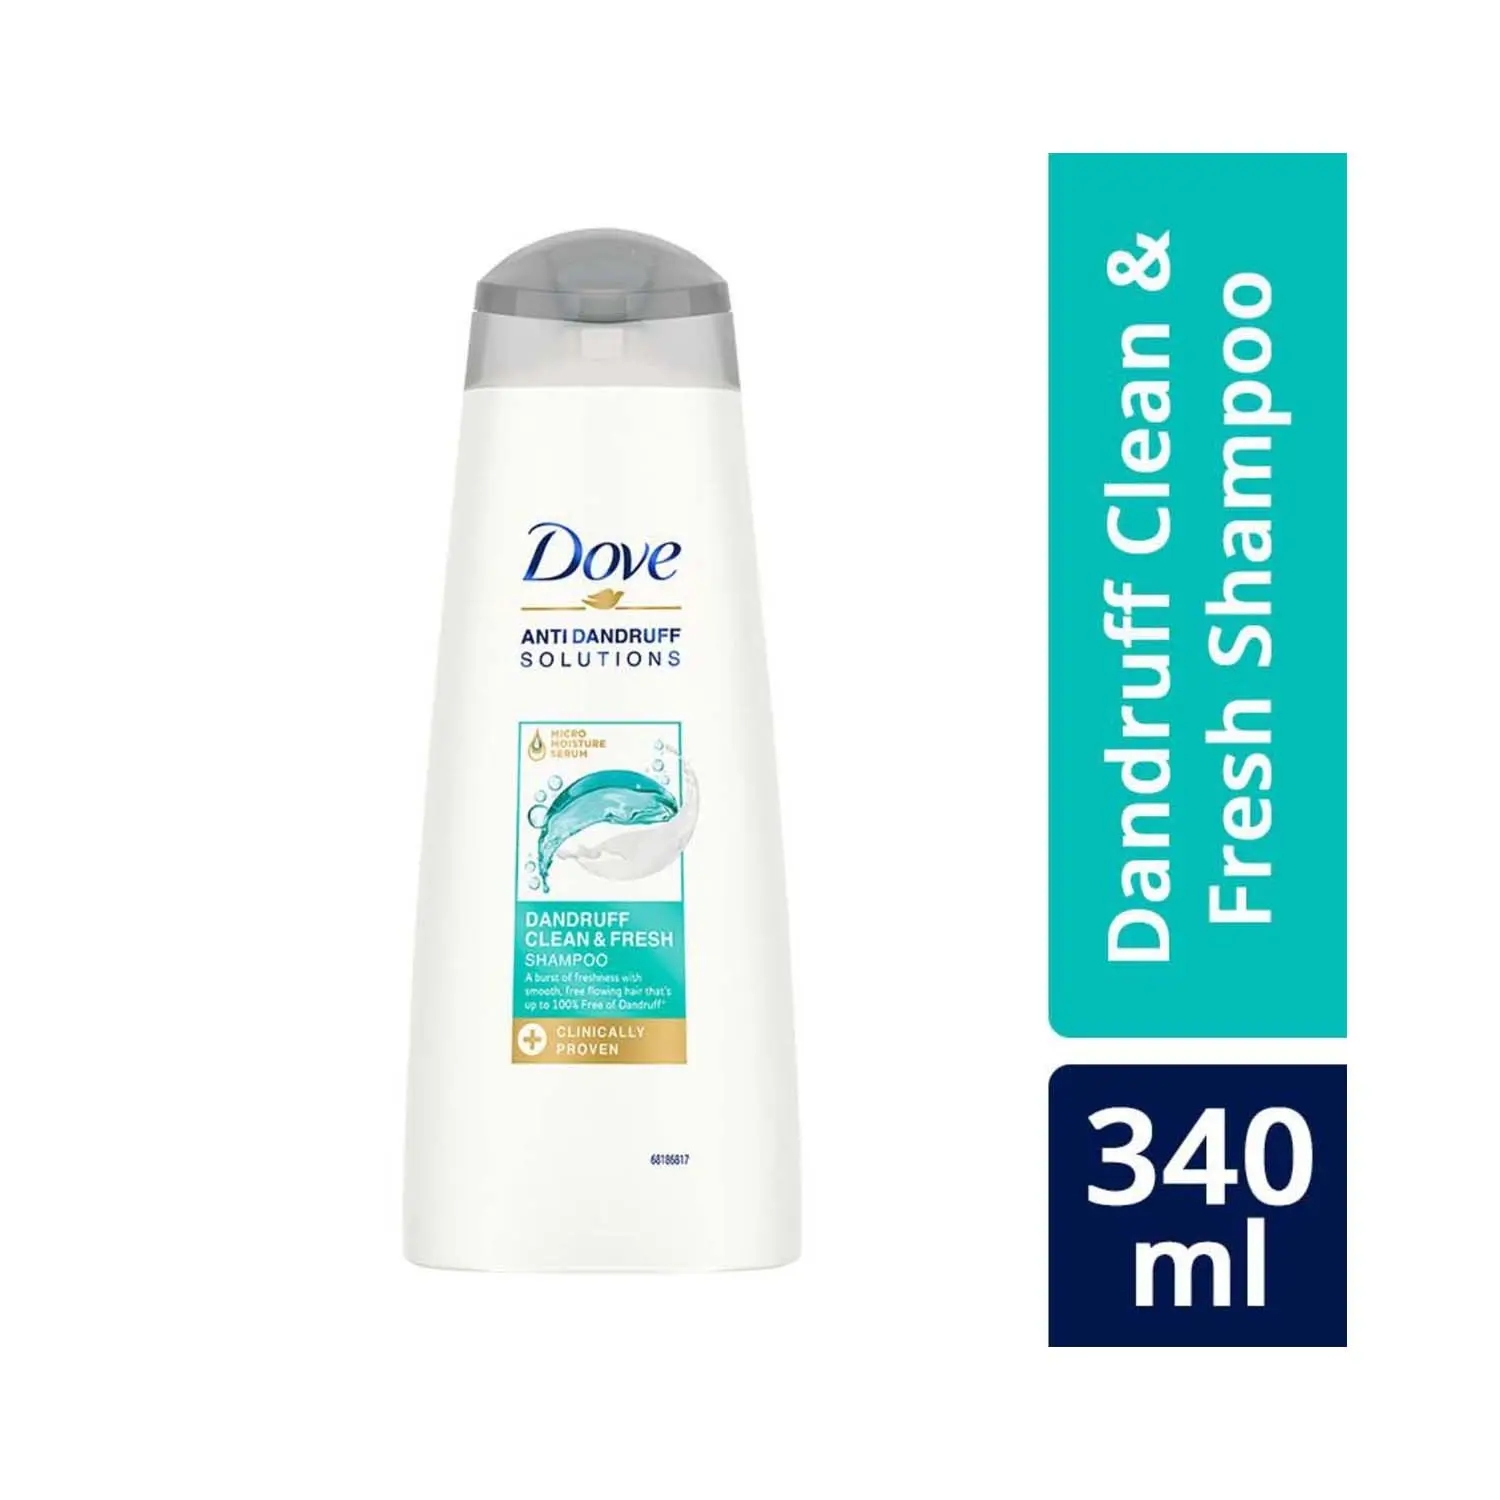 Dove | Dove Dandruff Clean & Fresh Shampoo (340ml)